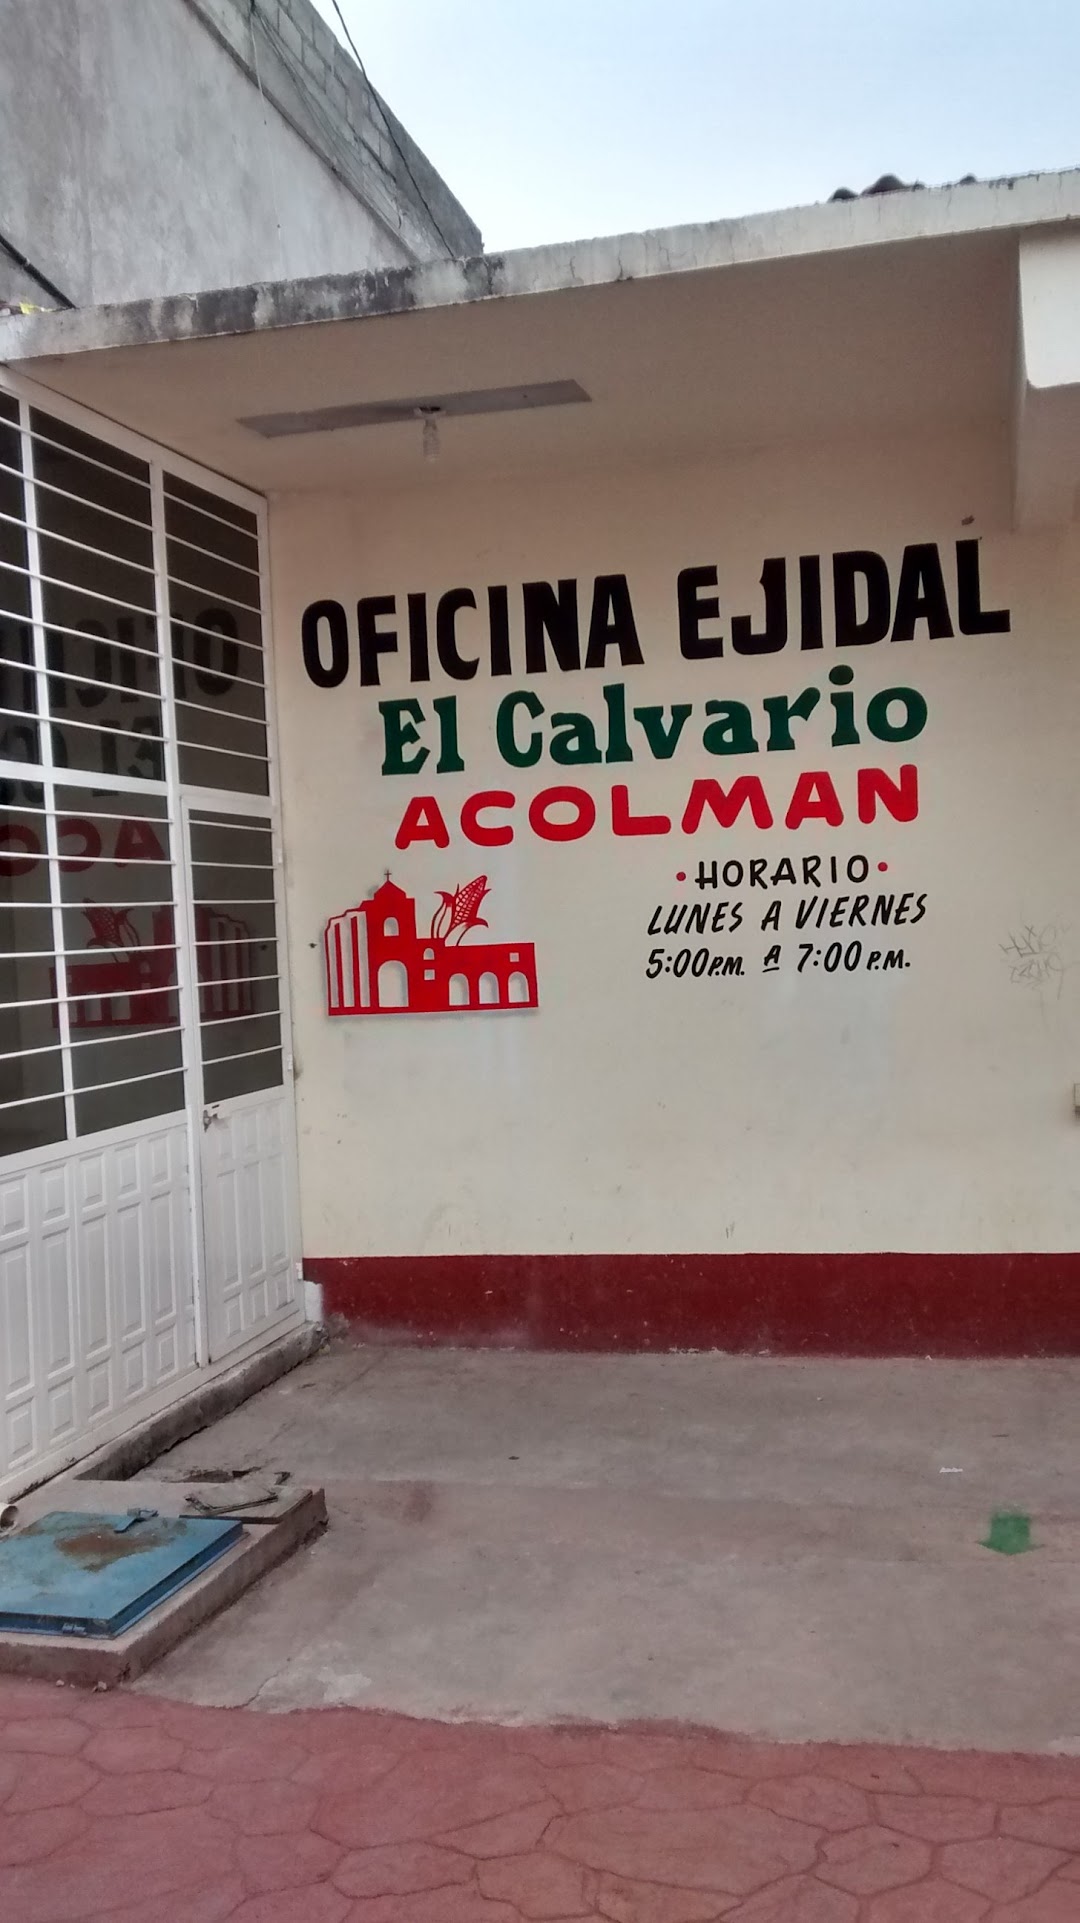 OFICINA EJIDAL El Calvario ACOLMAN